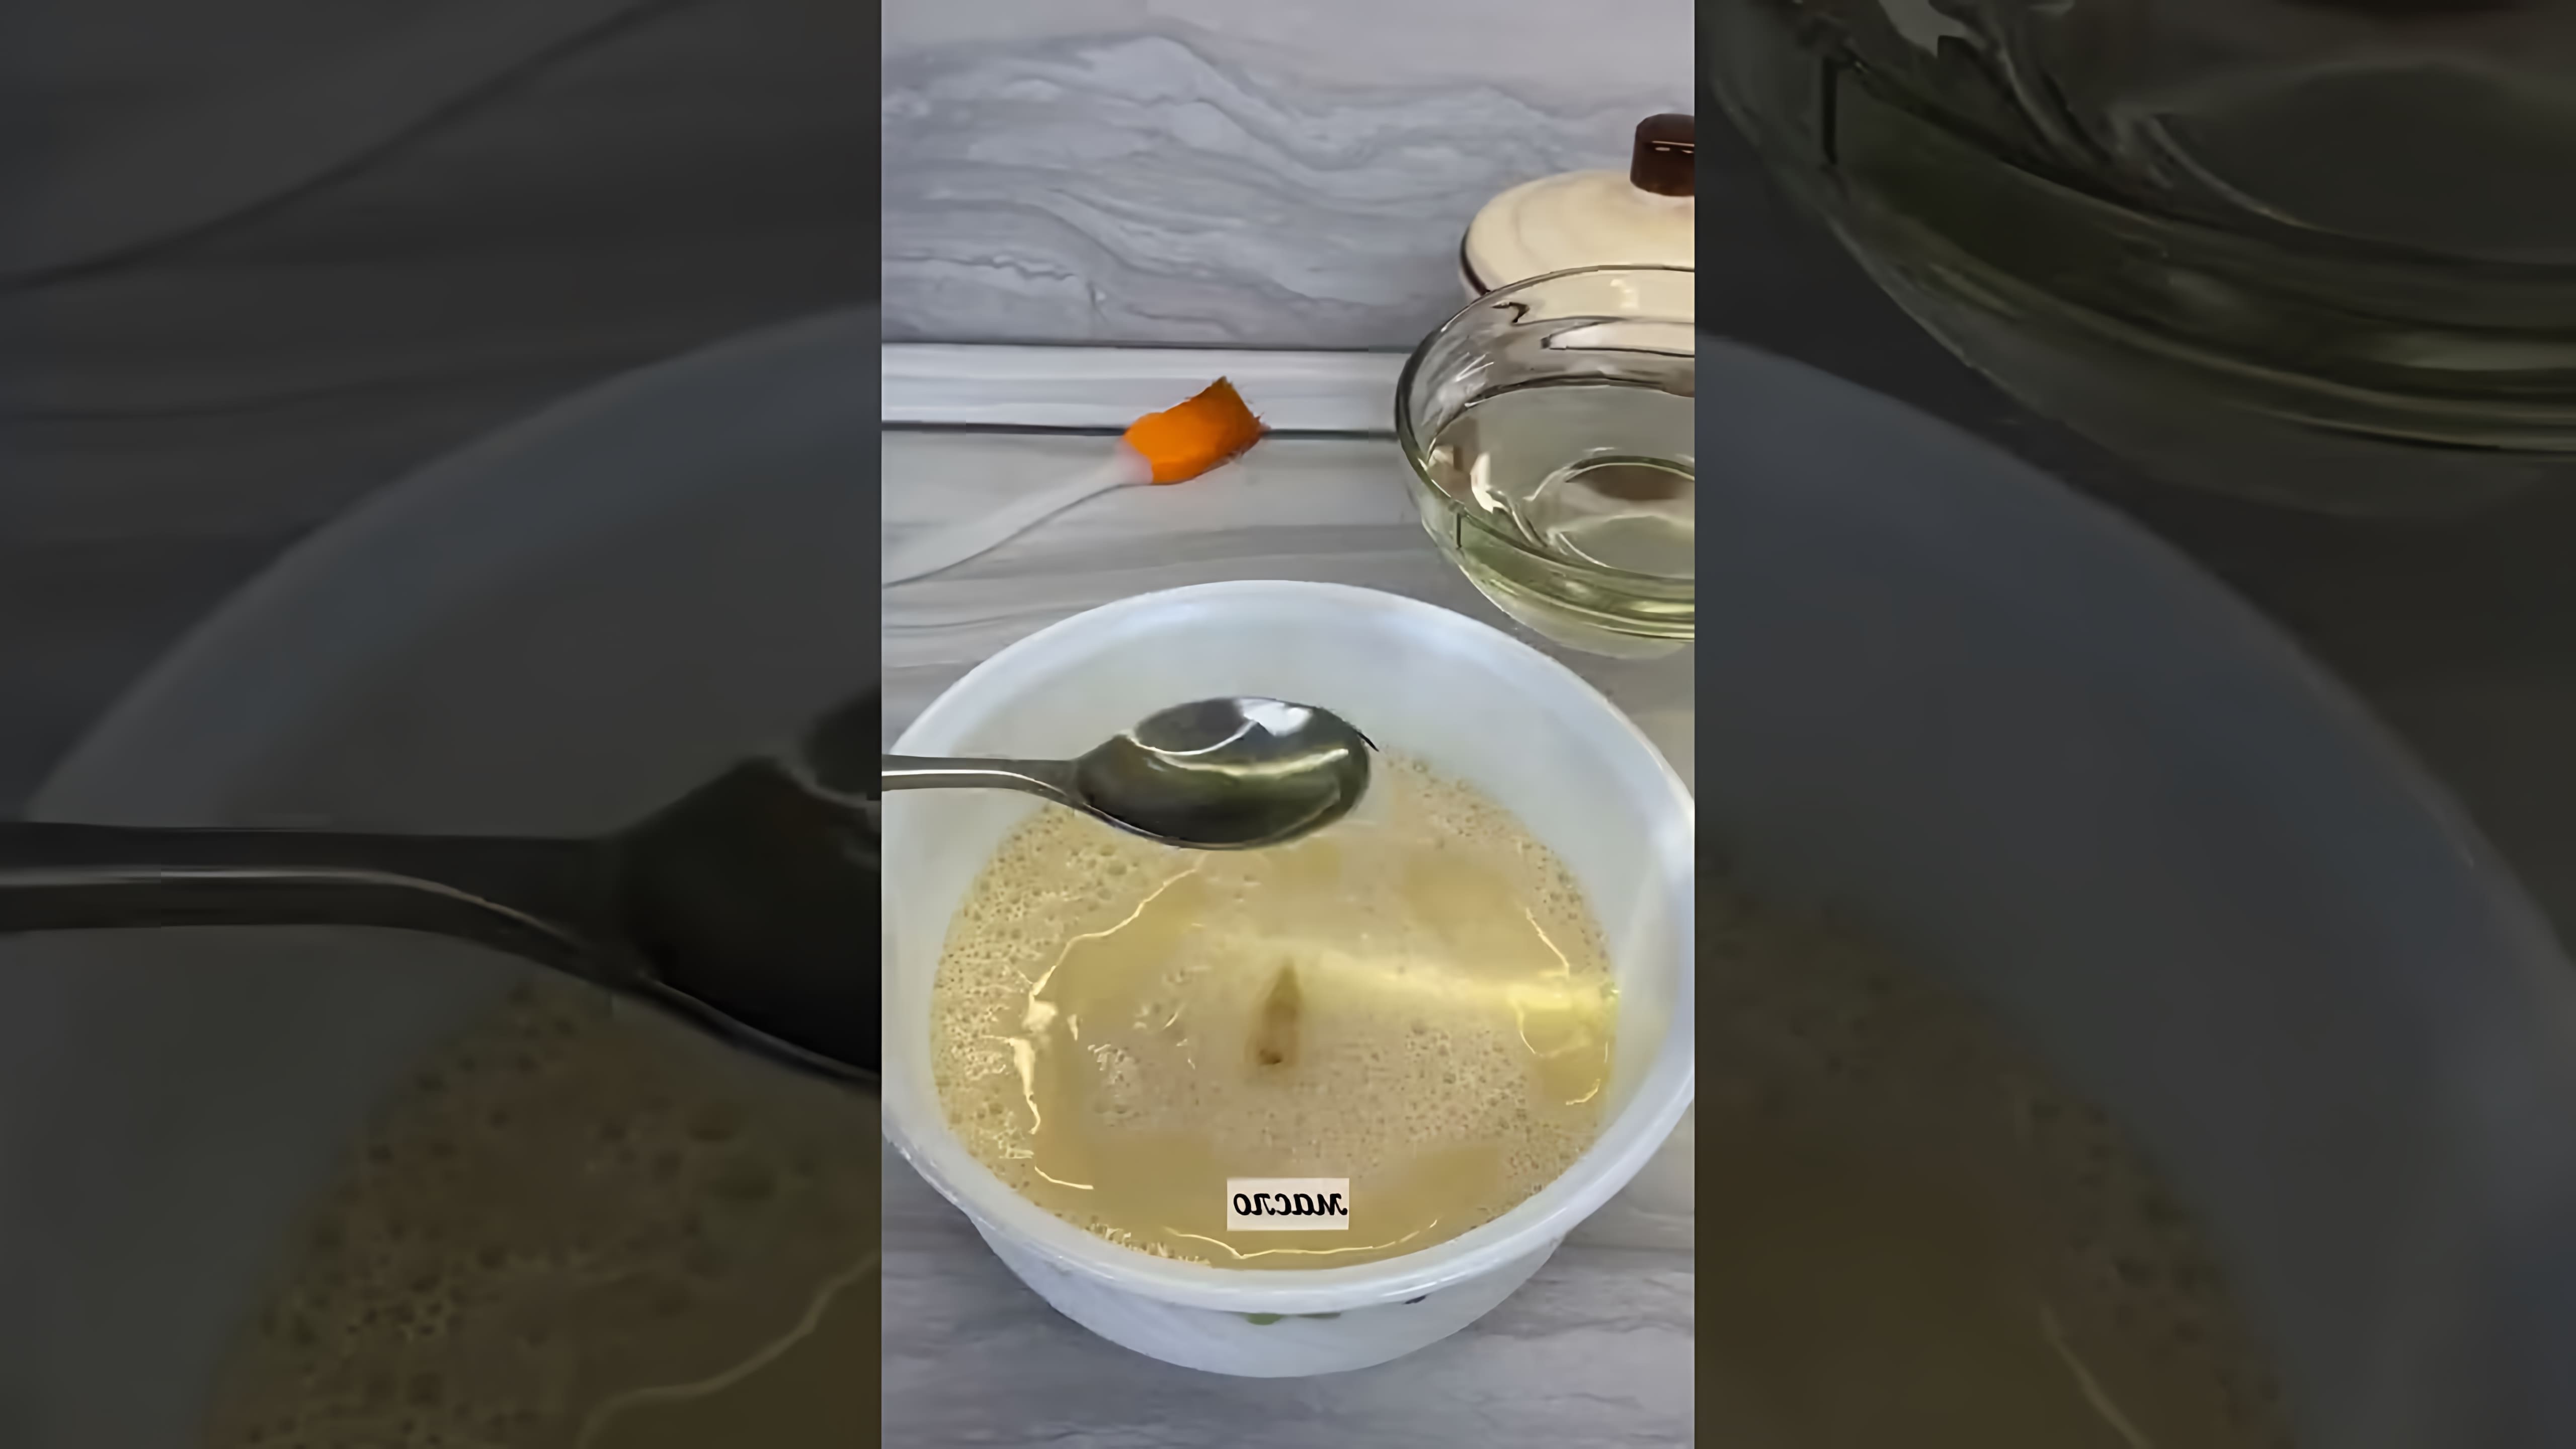 Видео посвящено приготовлению блинов из рисовой муки, используя только воду